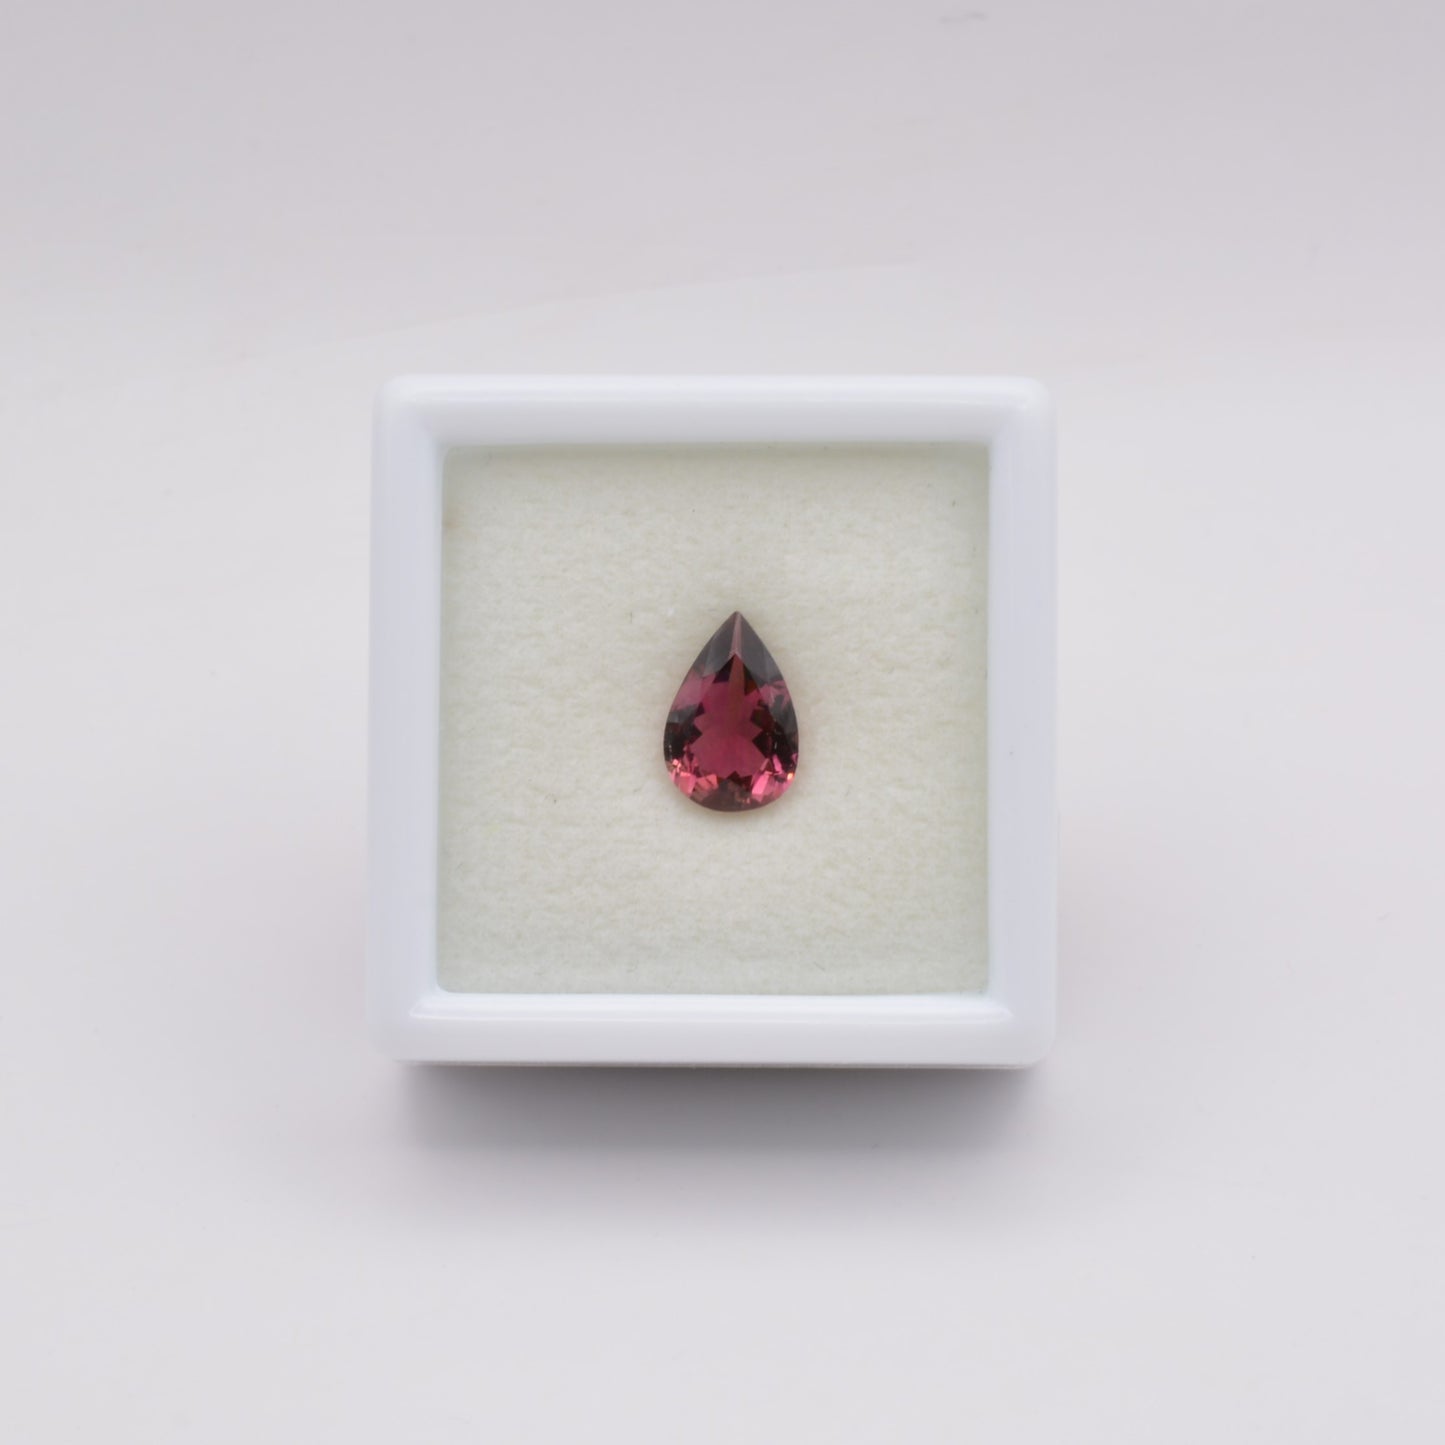 Tourmaline Rose Poire 0,76ct - pierre précieuse - gemme